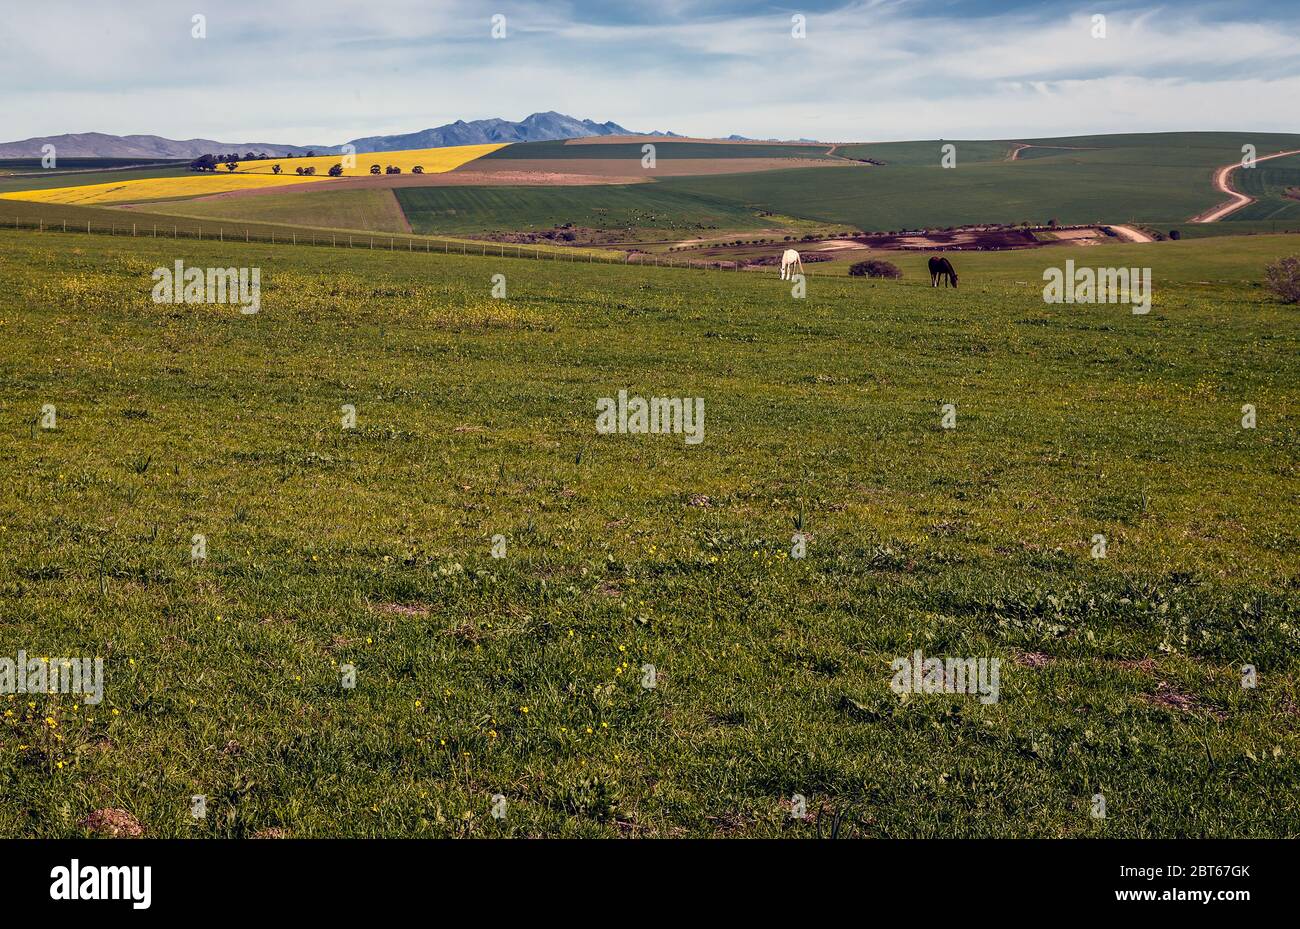 Eine ländliche Landschaft aus Raps- und Weizenfeldern mit niedrigen Wolken mit grasenden Pferden gegen Berge, Western Cape Province, Südafrika Stockfoto